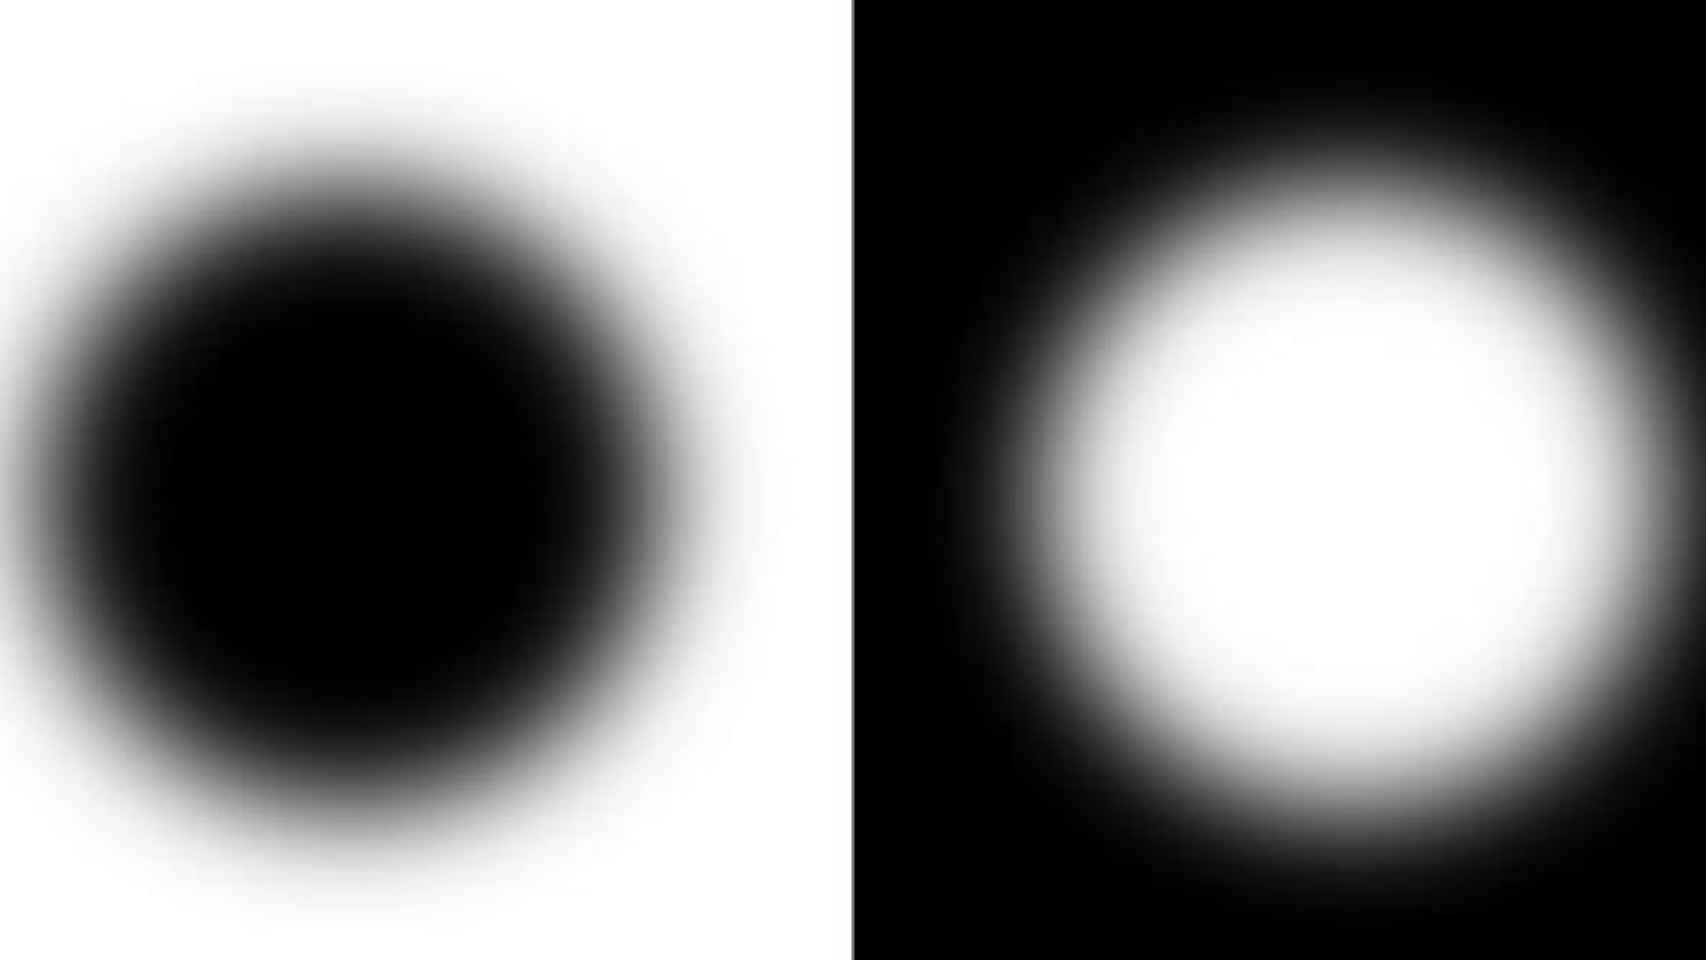 Los círculos difuminados blanco y negro son iguales pero el blanco parece más grande.